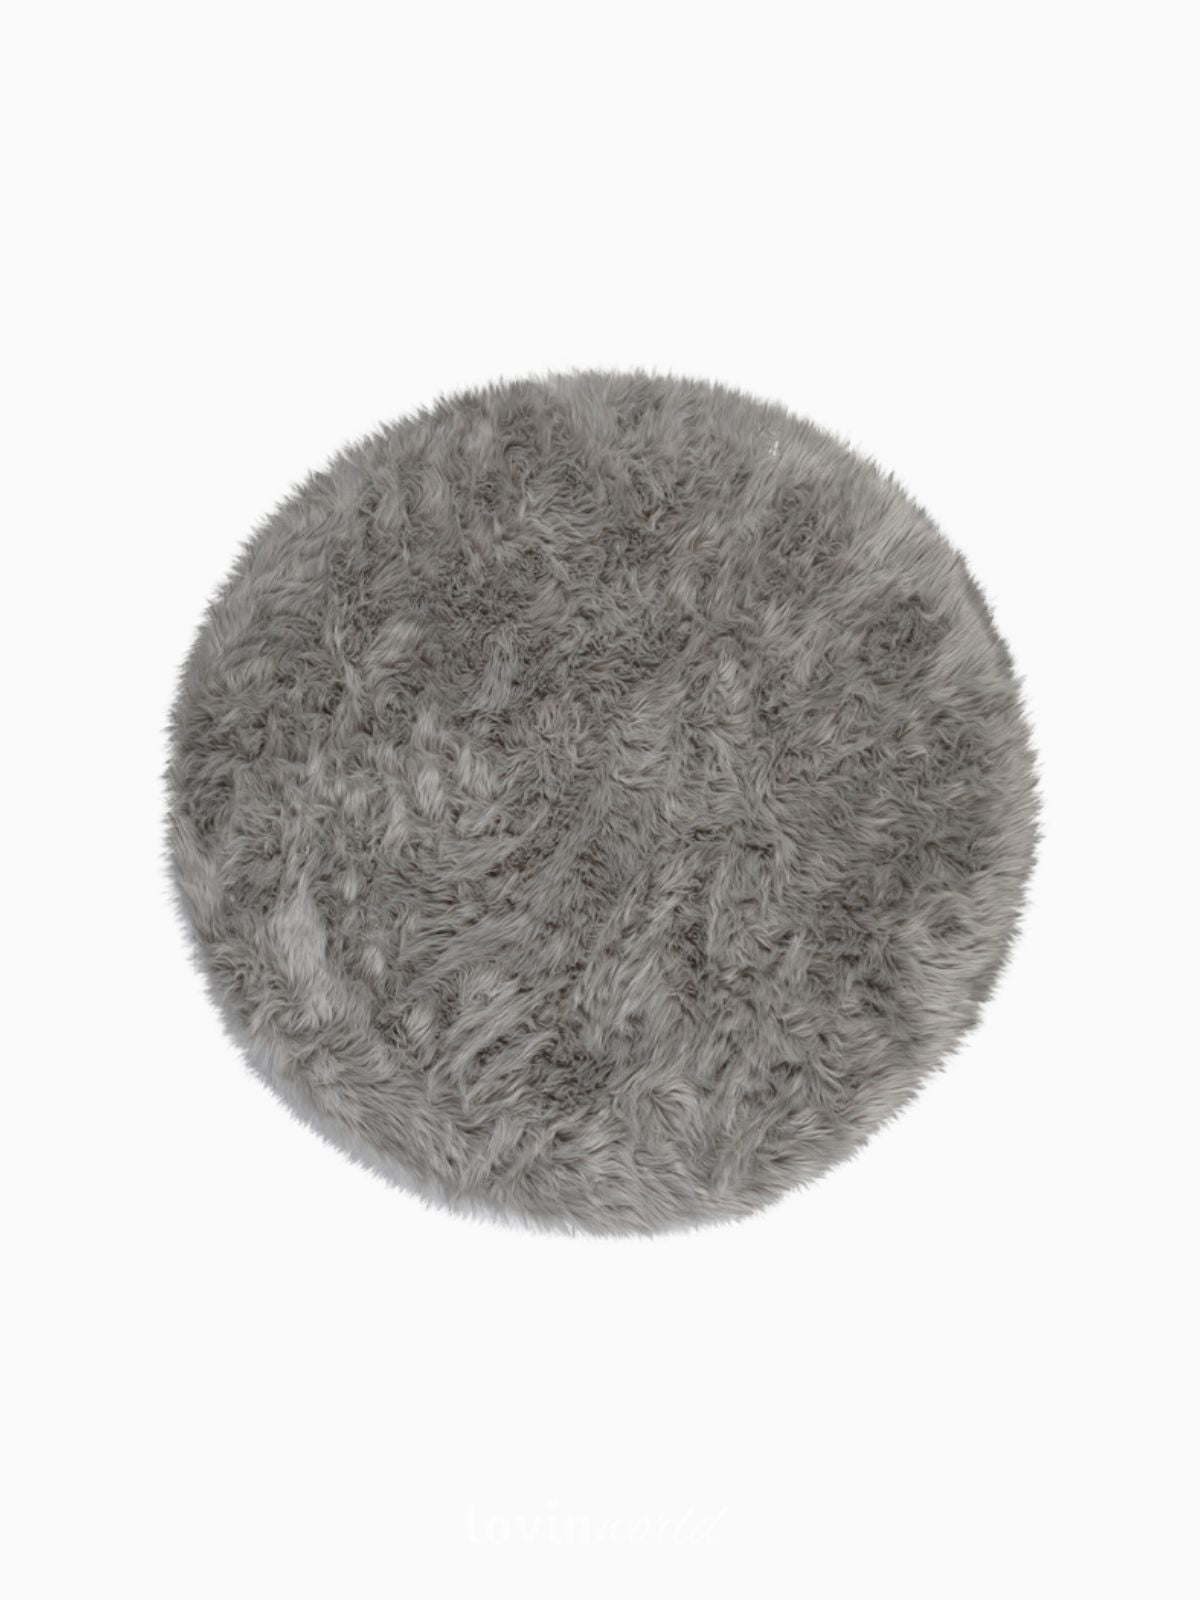 Tappeto rotondo shaggy Sheepskin in poliestere, colore grigio 120x120 cm.-1